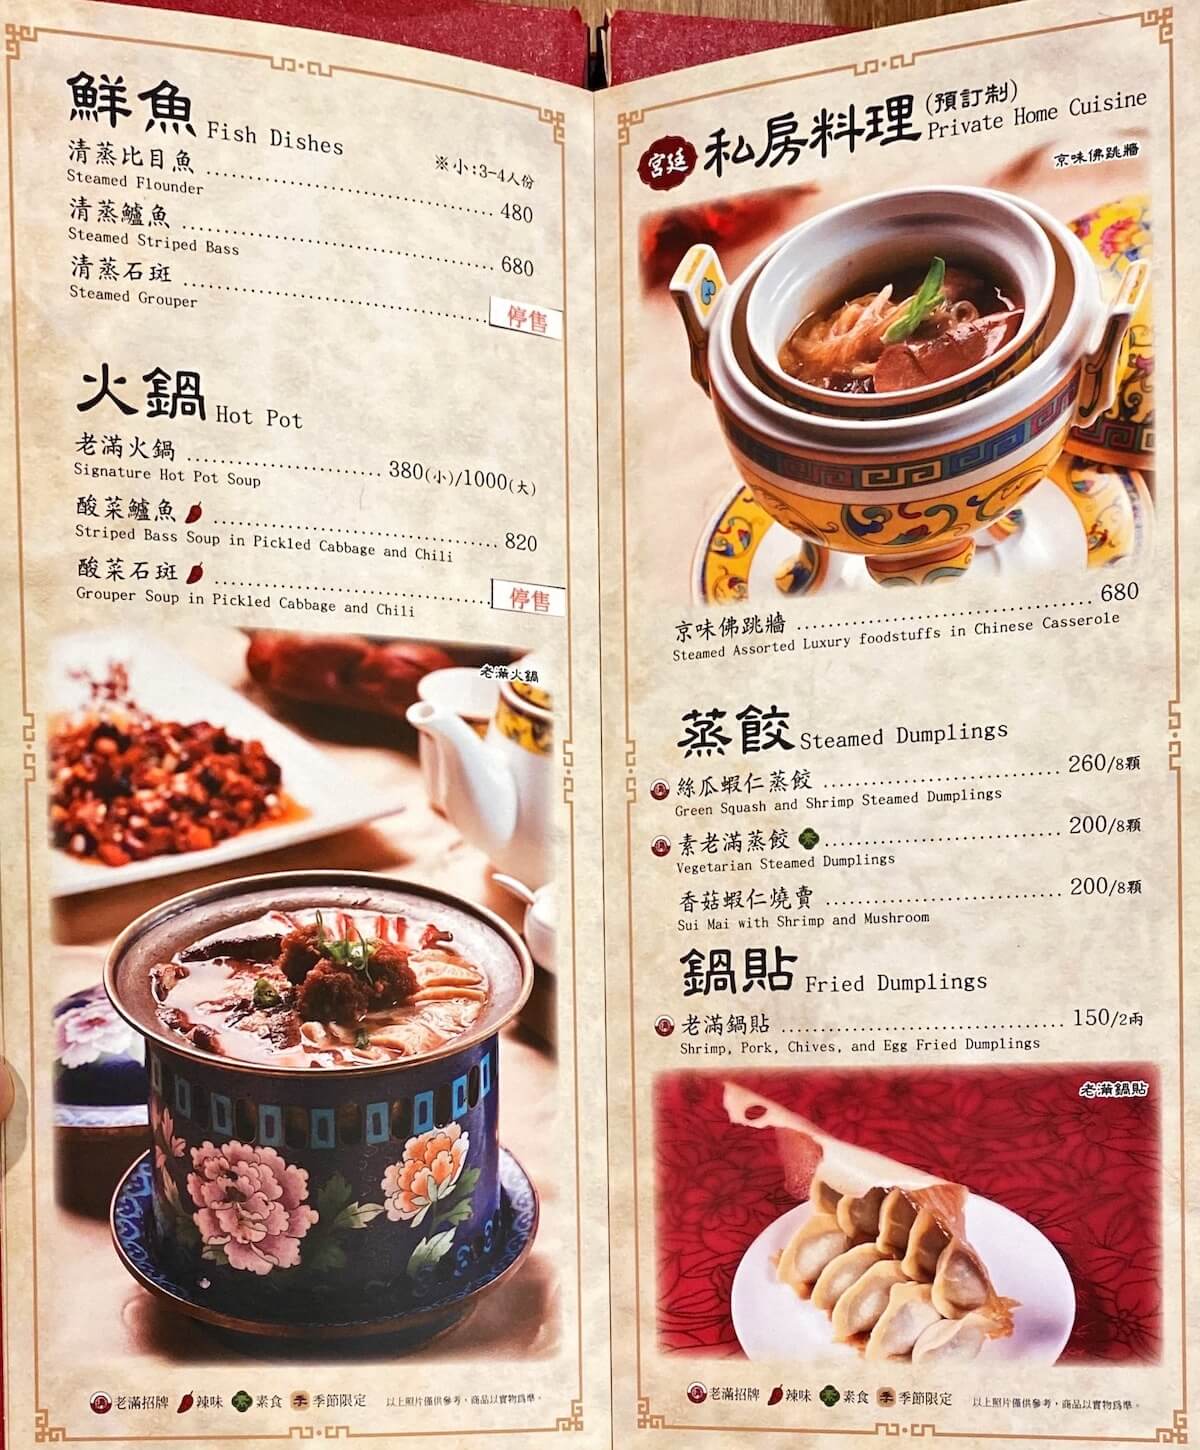 Fish dishes, hot pot food, dumplings, main menu